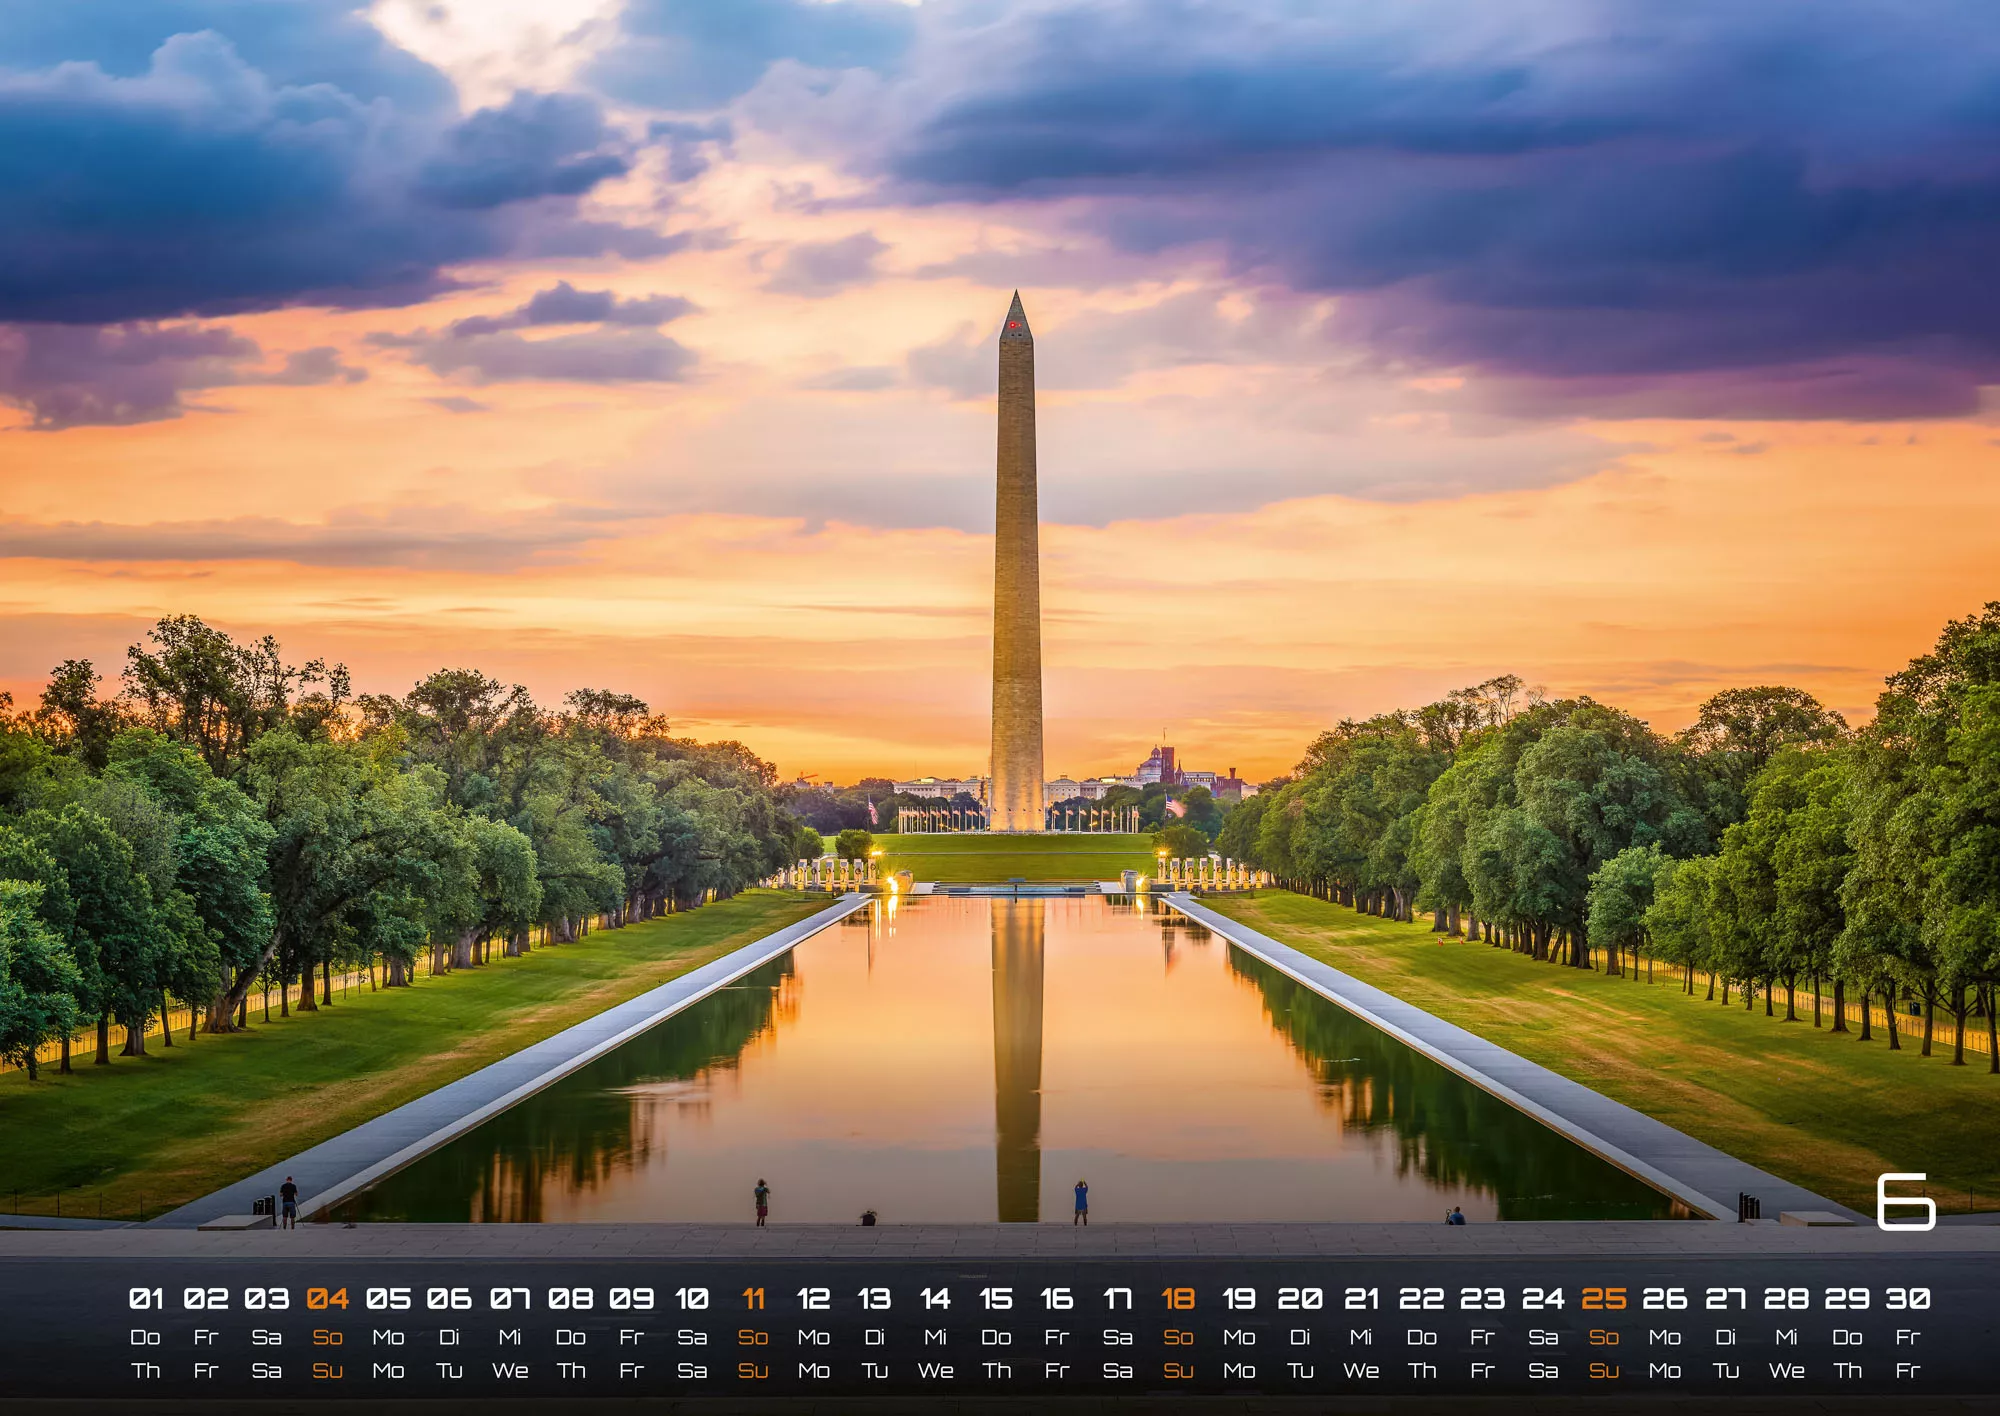 USA - eine Reise durch die Vereinigten Staaten - dem Land der unbegrenzten Möglichkeiten - 2023 - Kalender